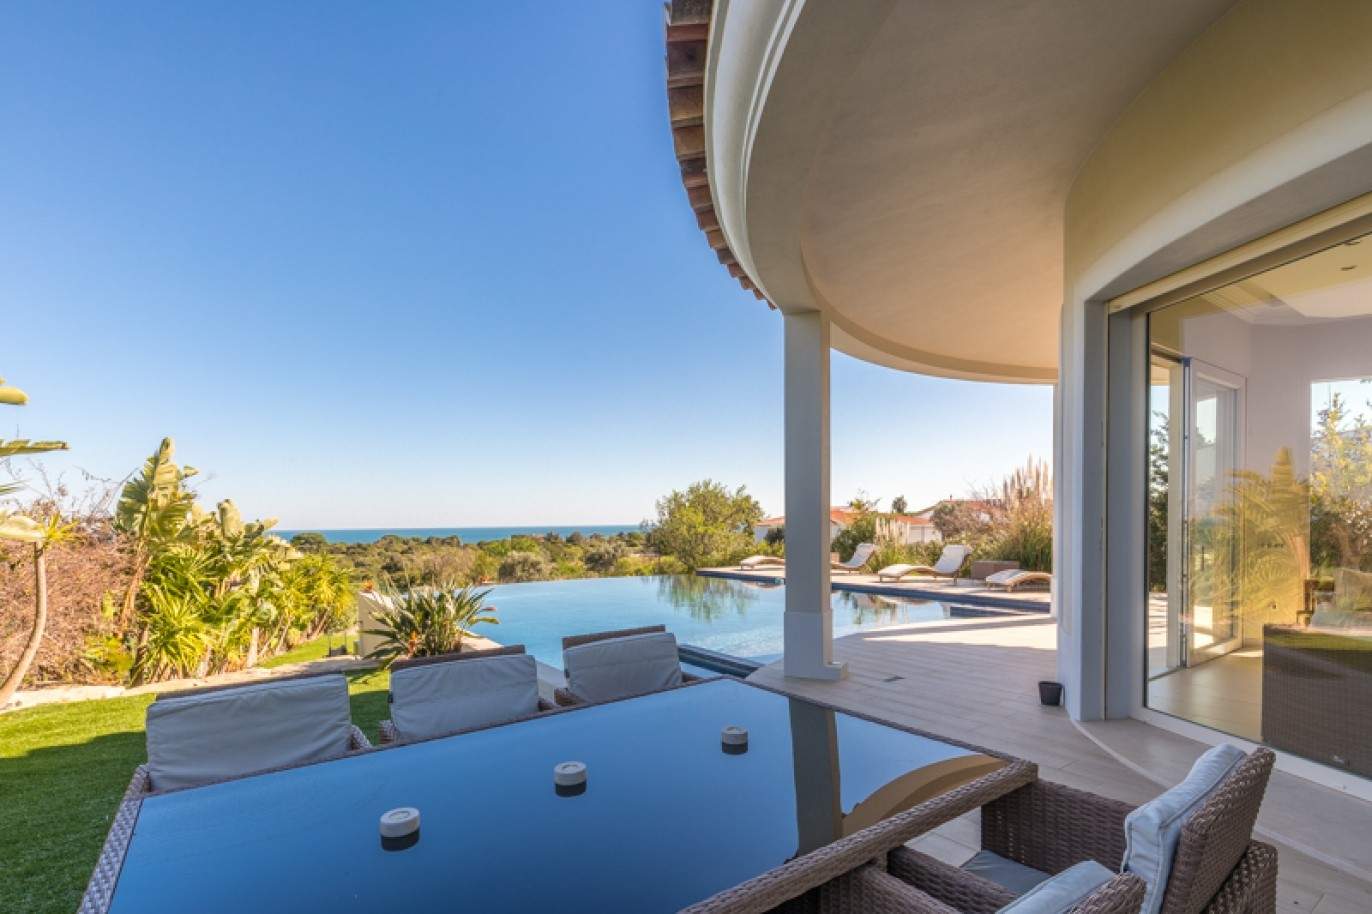 Freistehende villa zum Verkauf mit Meerblick, in der Nähe von Strand und golf, Carvoeiro, Algarve, Portugal_76410